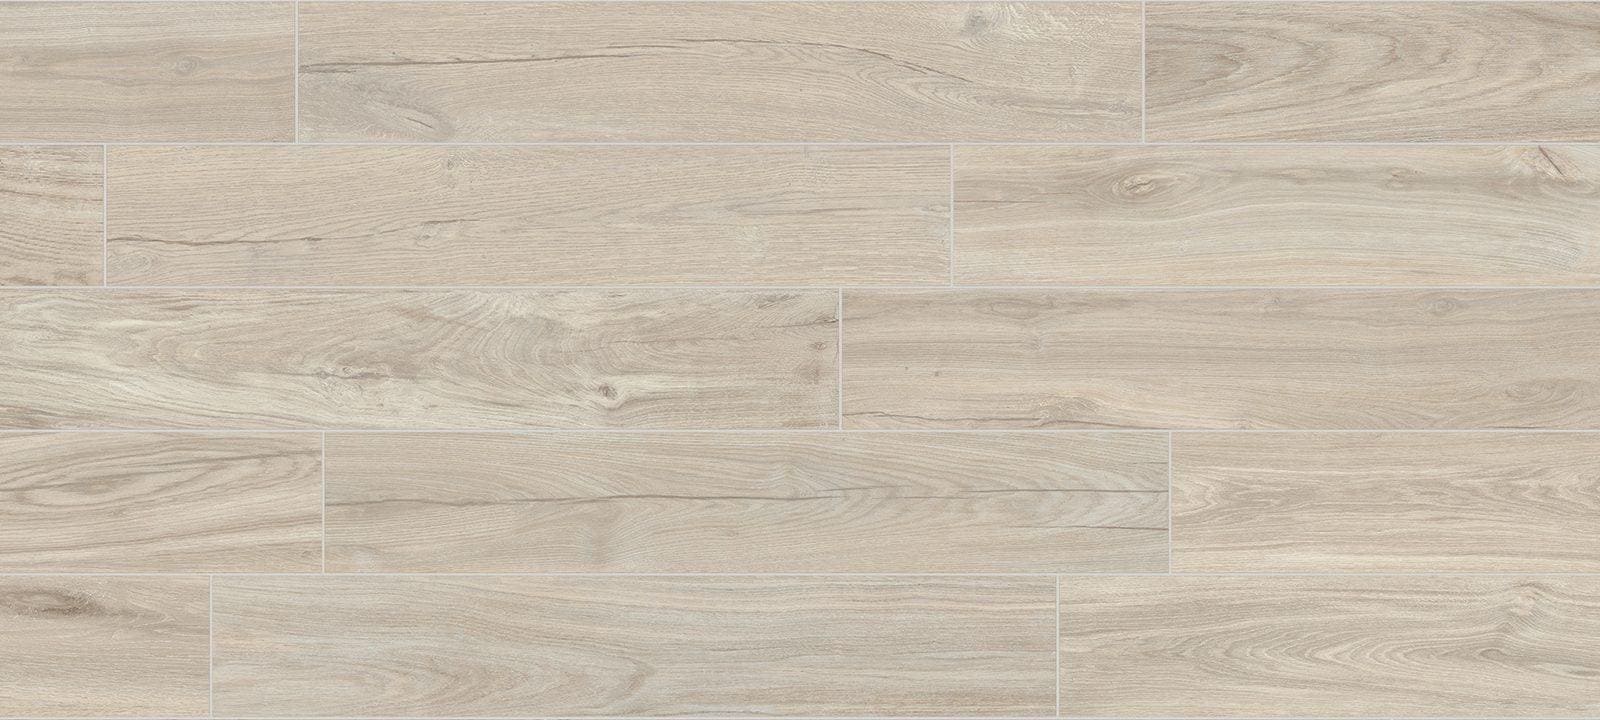 Minoli Tiles – Wood Effect 20 x 120 x 0.9cm Sold by 1.44m² Jurupa Basic Matt